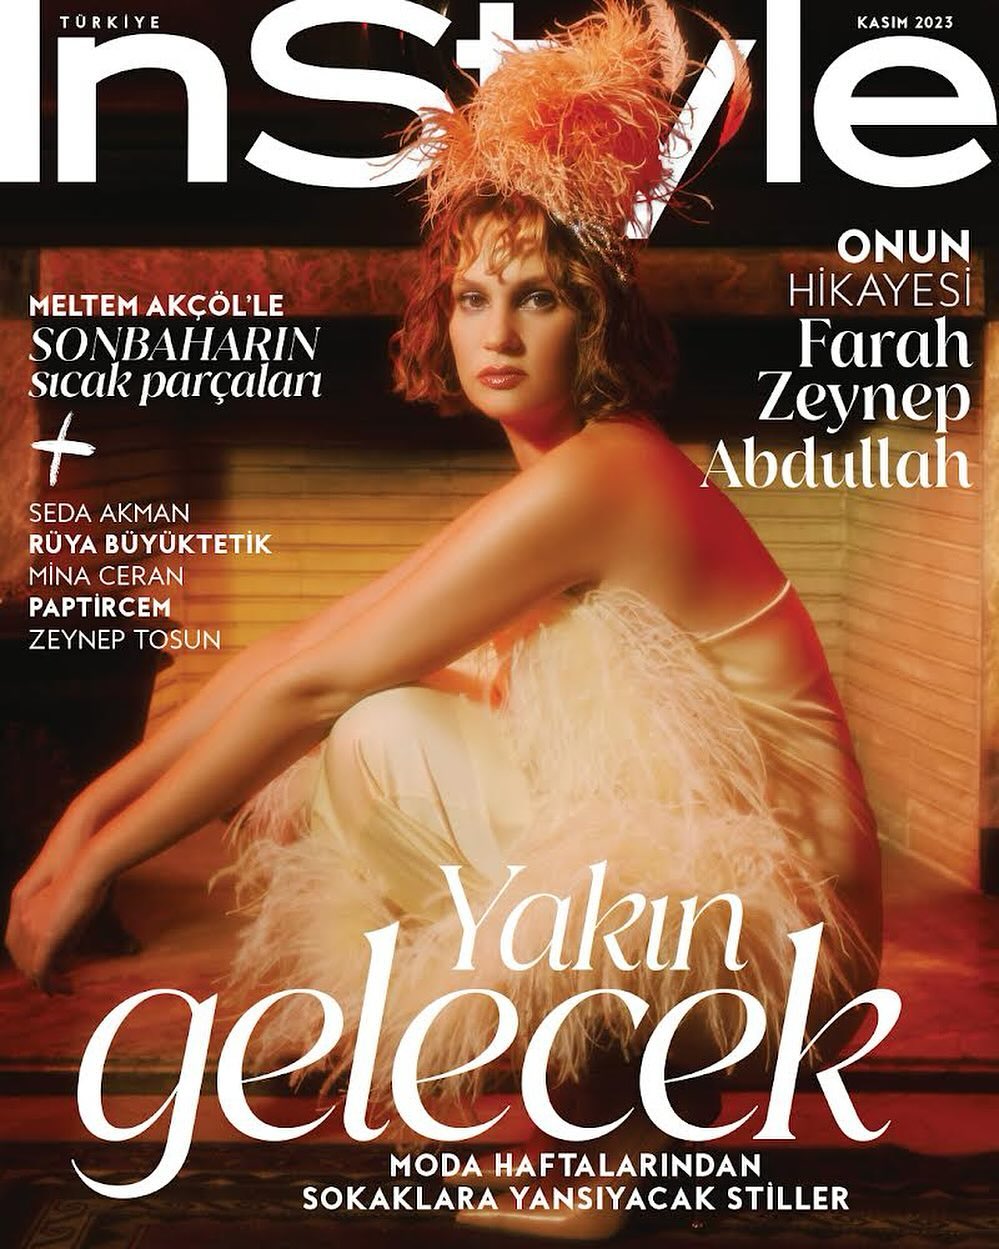 Farah Zeynep Abdullah beautiful turkish actress